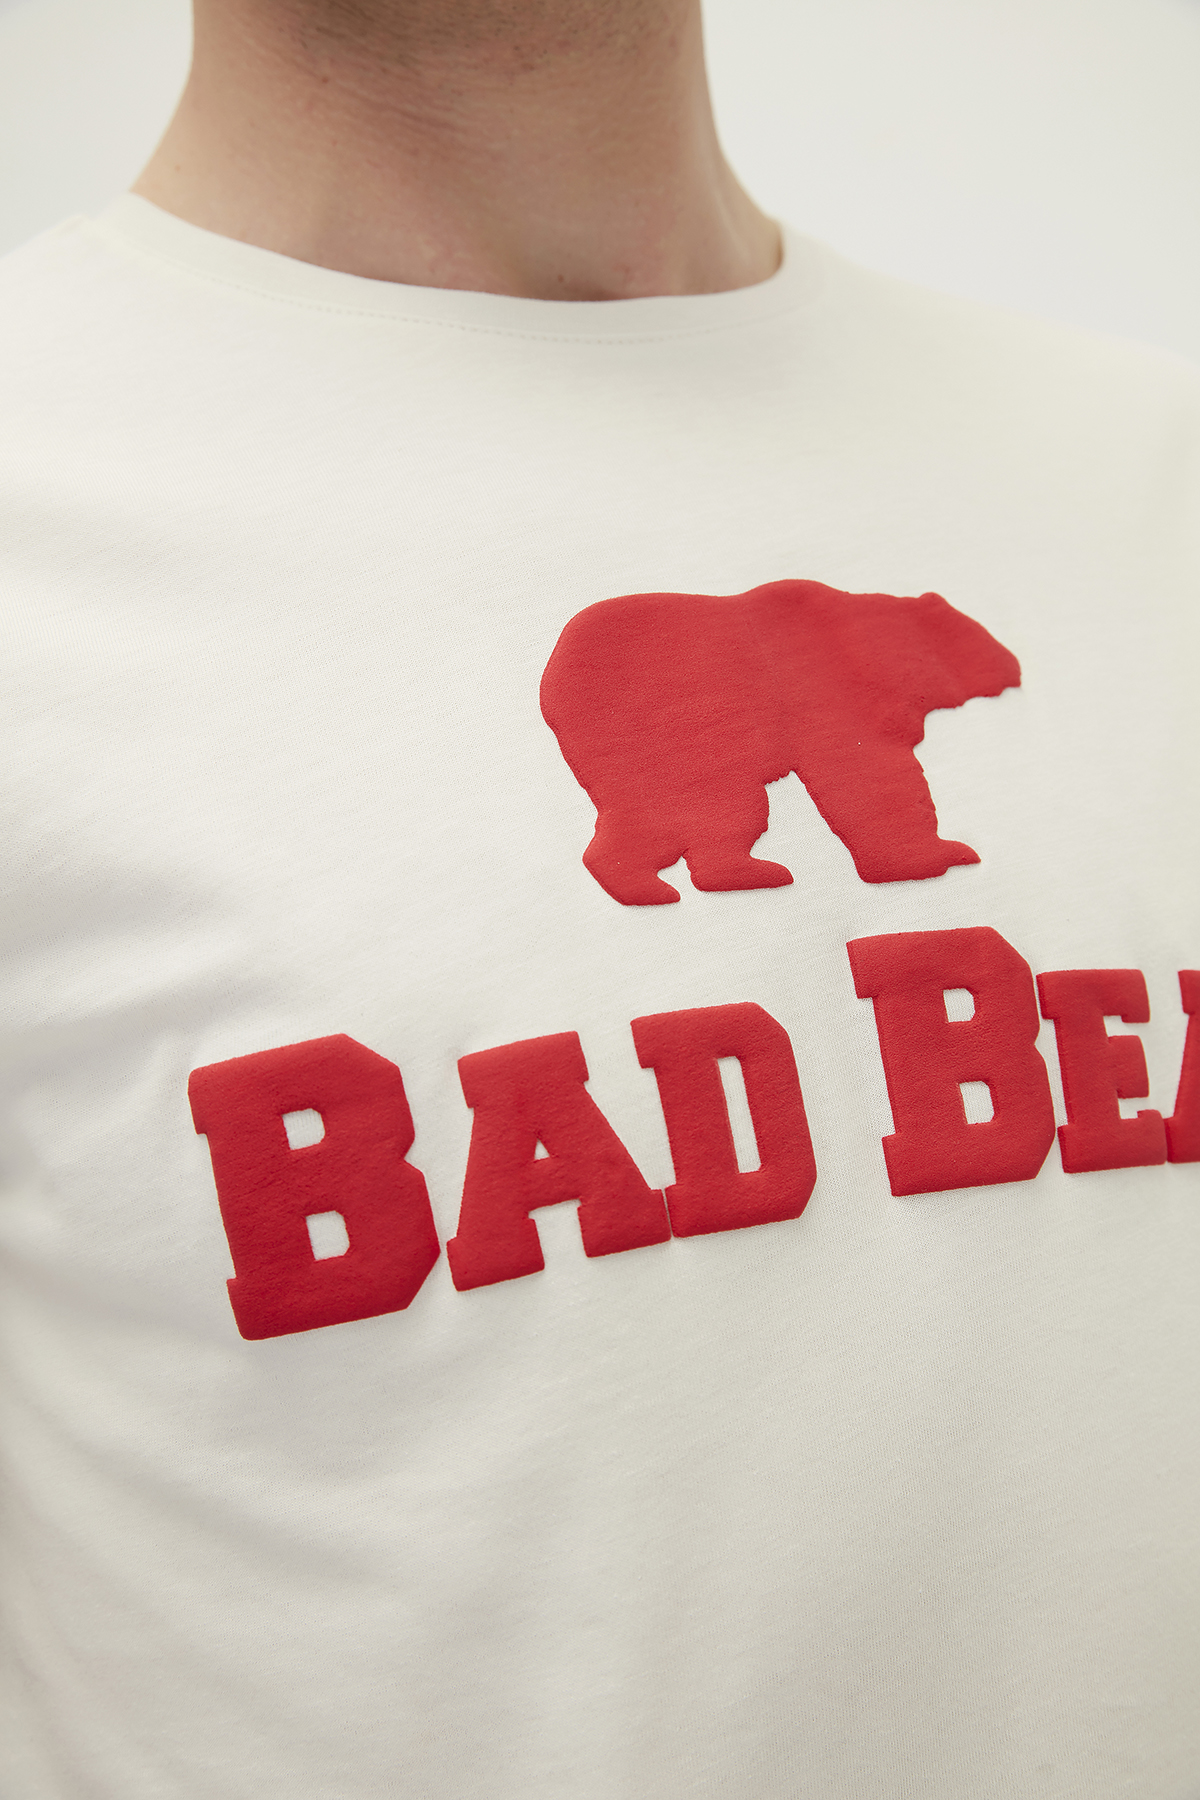 Bear Tee Beyaz/Kırmızı Baskılı Erkek Tişört | BAD BEAR